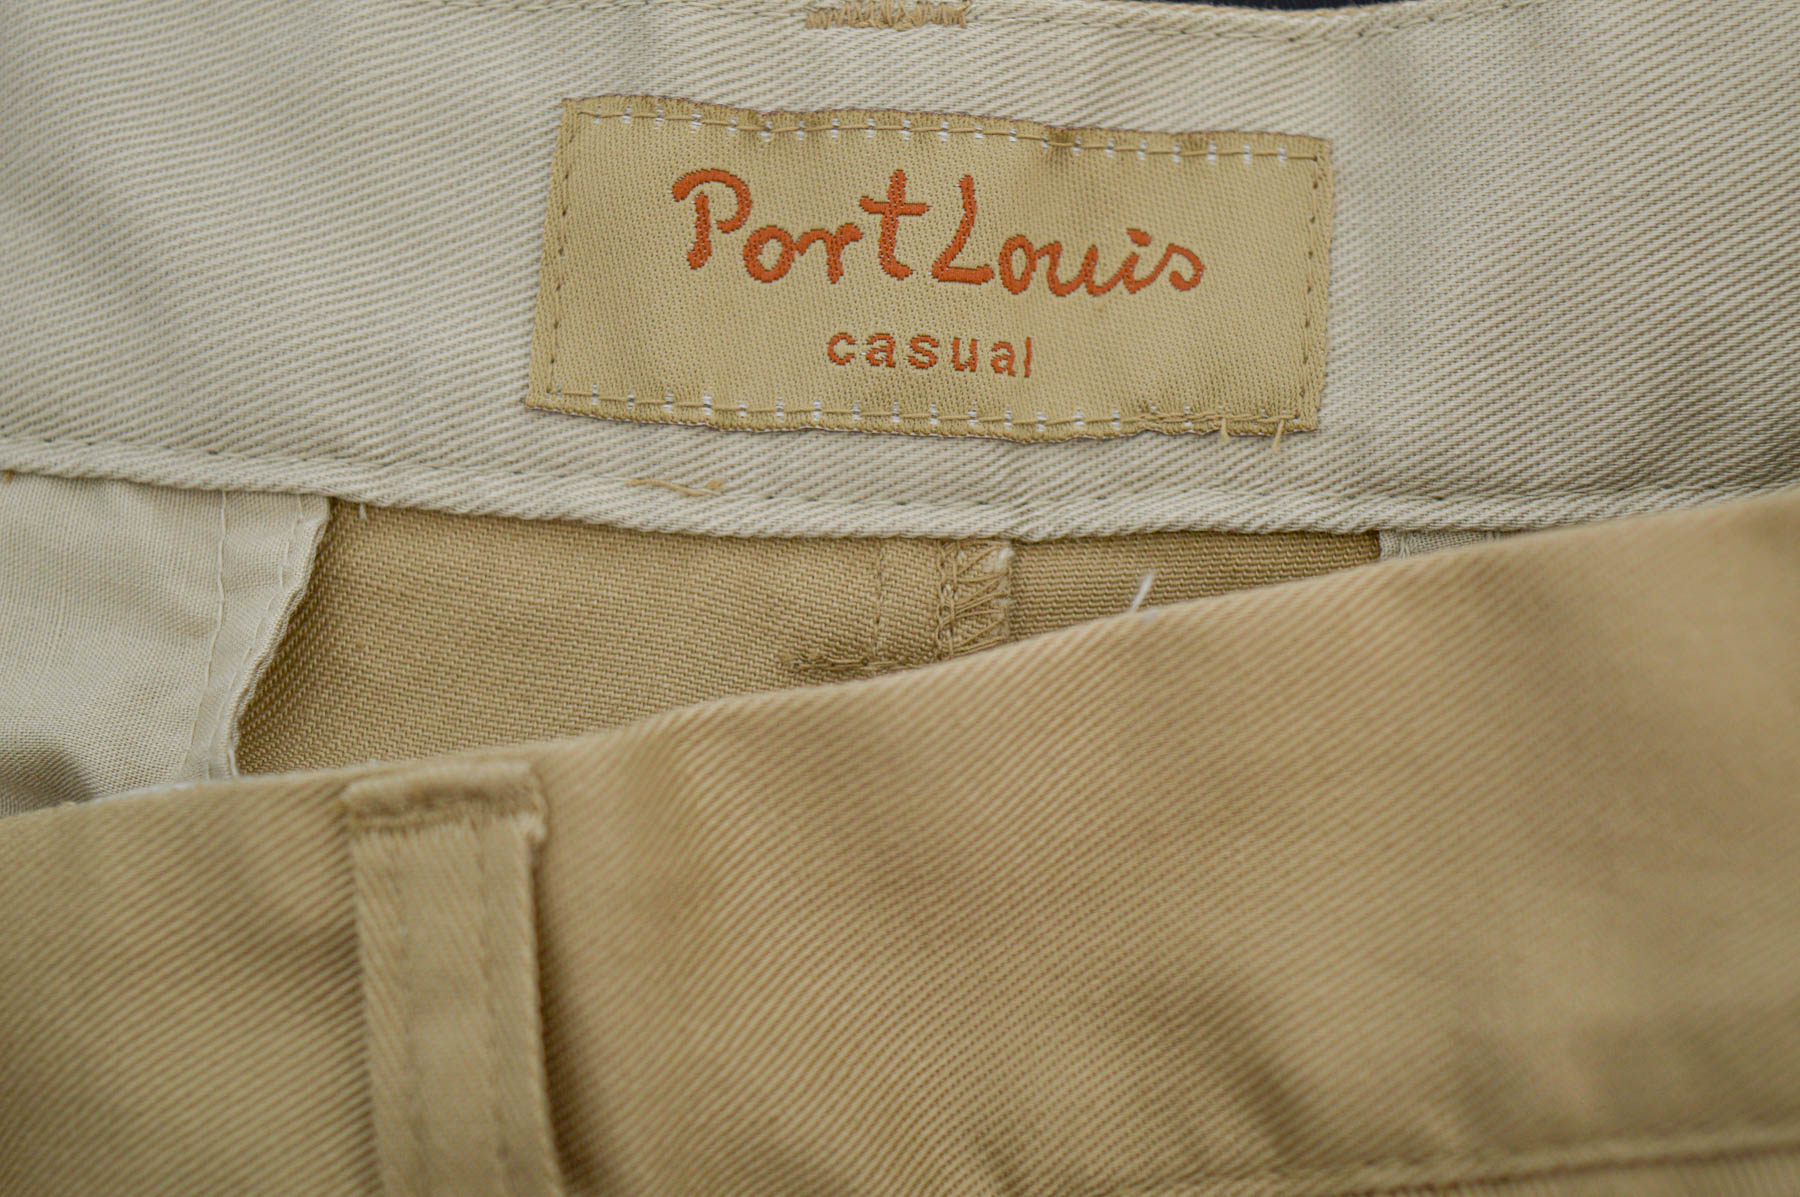 Men's trousers - Port Louis - 2